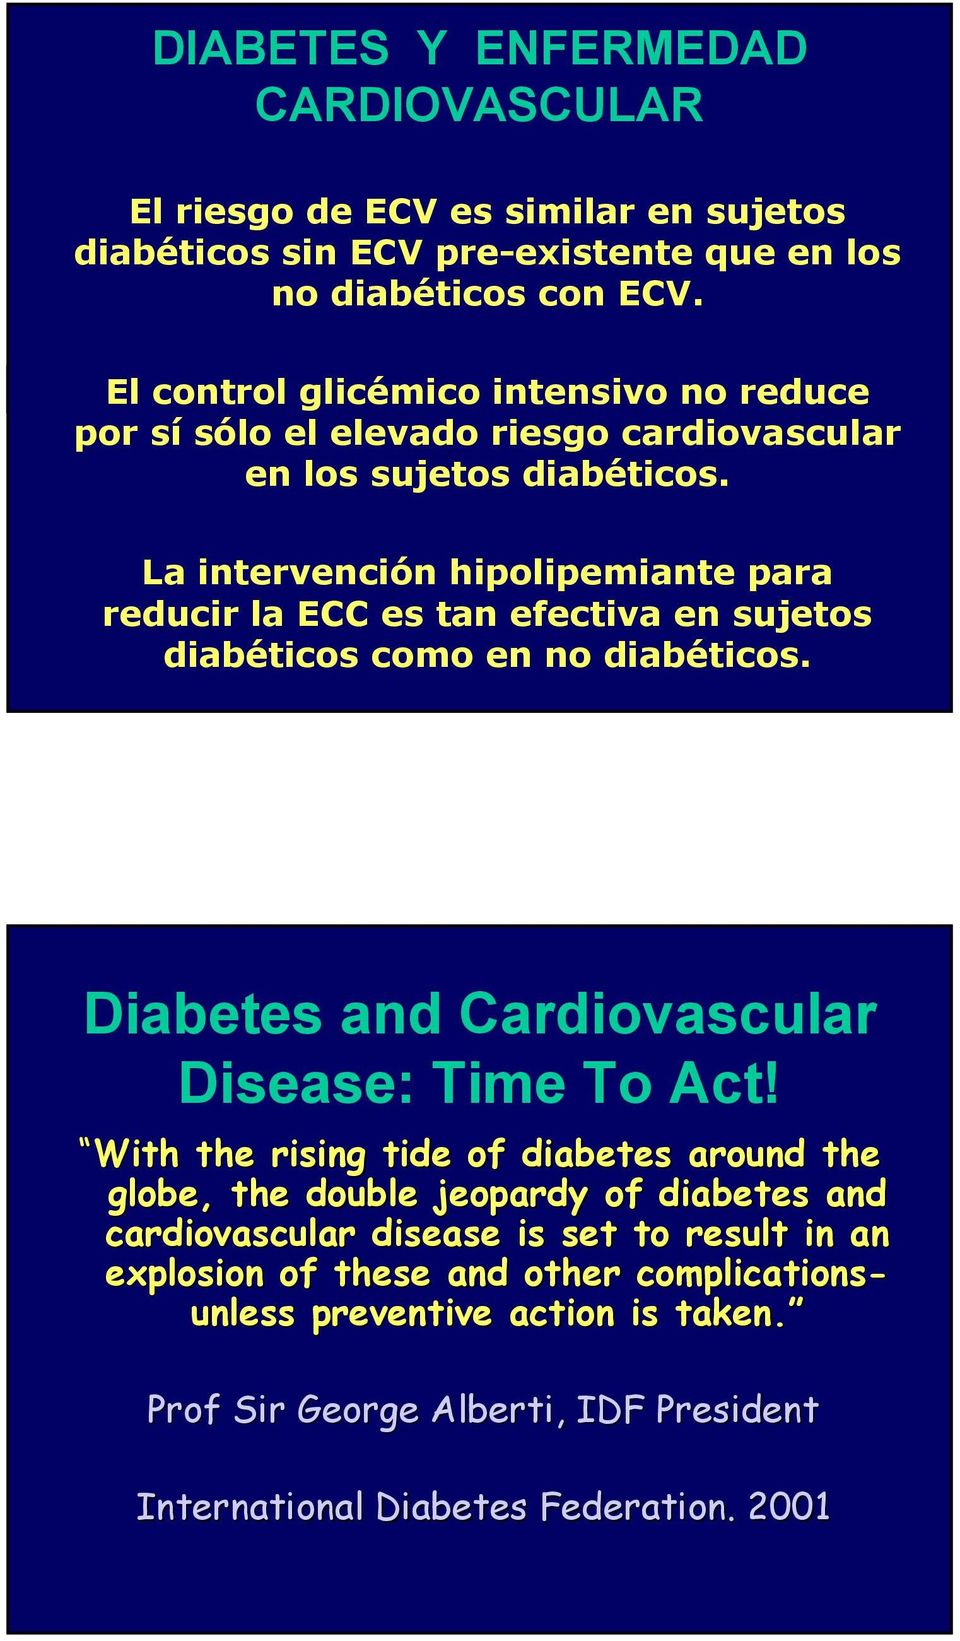 La intervención hipolipemiante para reducir la ECC es tan efectiva en sujetos diabéticos como en no diabéticos. Diabetes and Cardiovascular Disease: Time To Act!